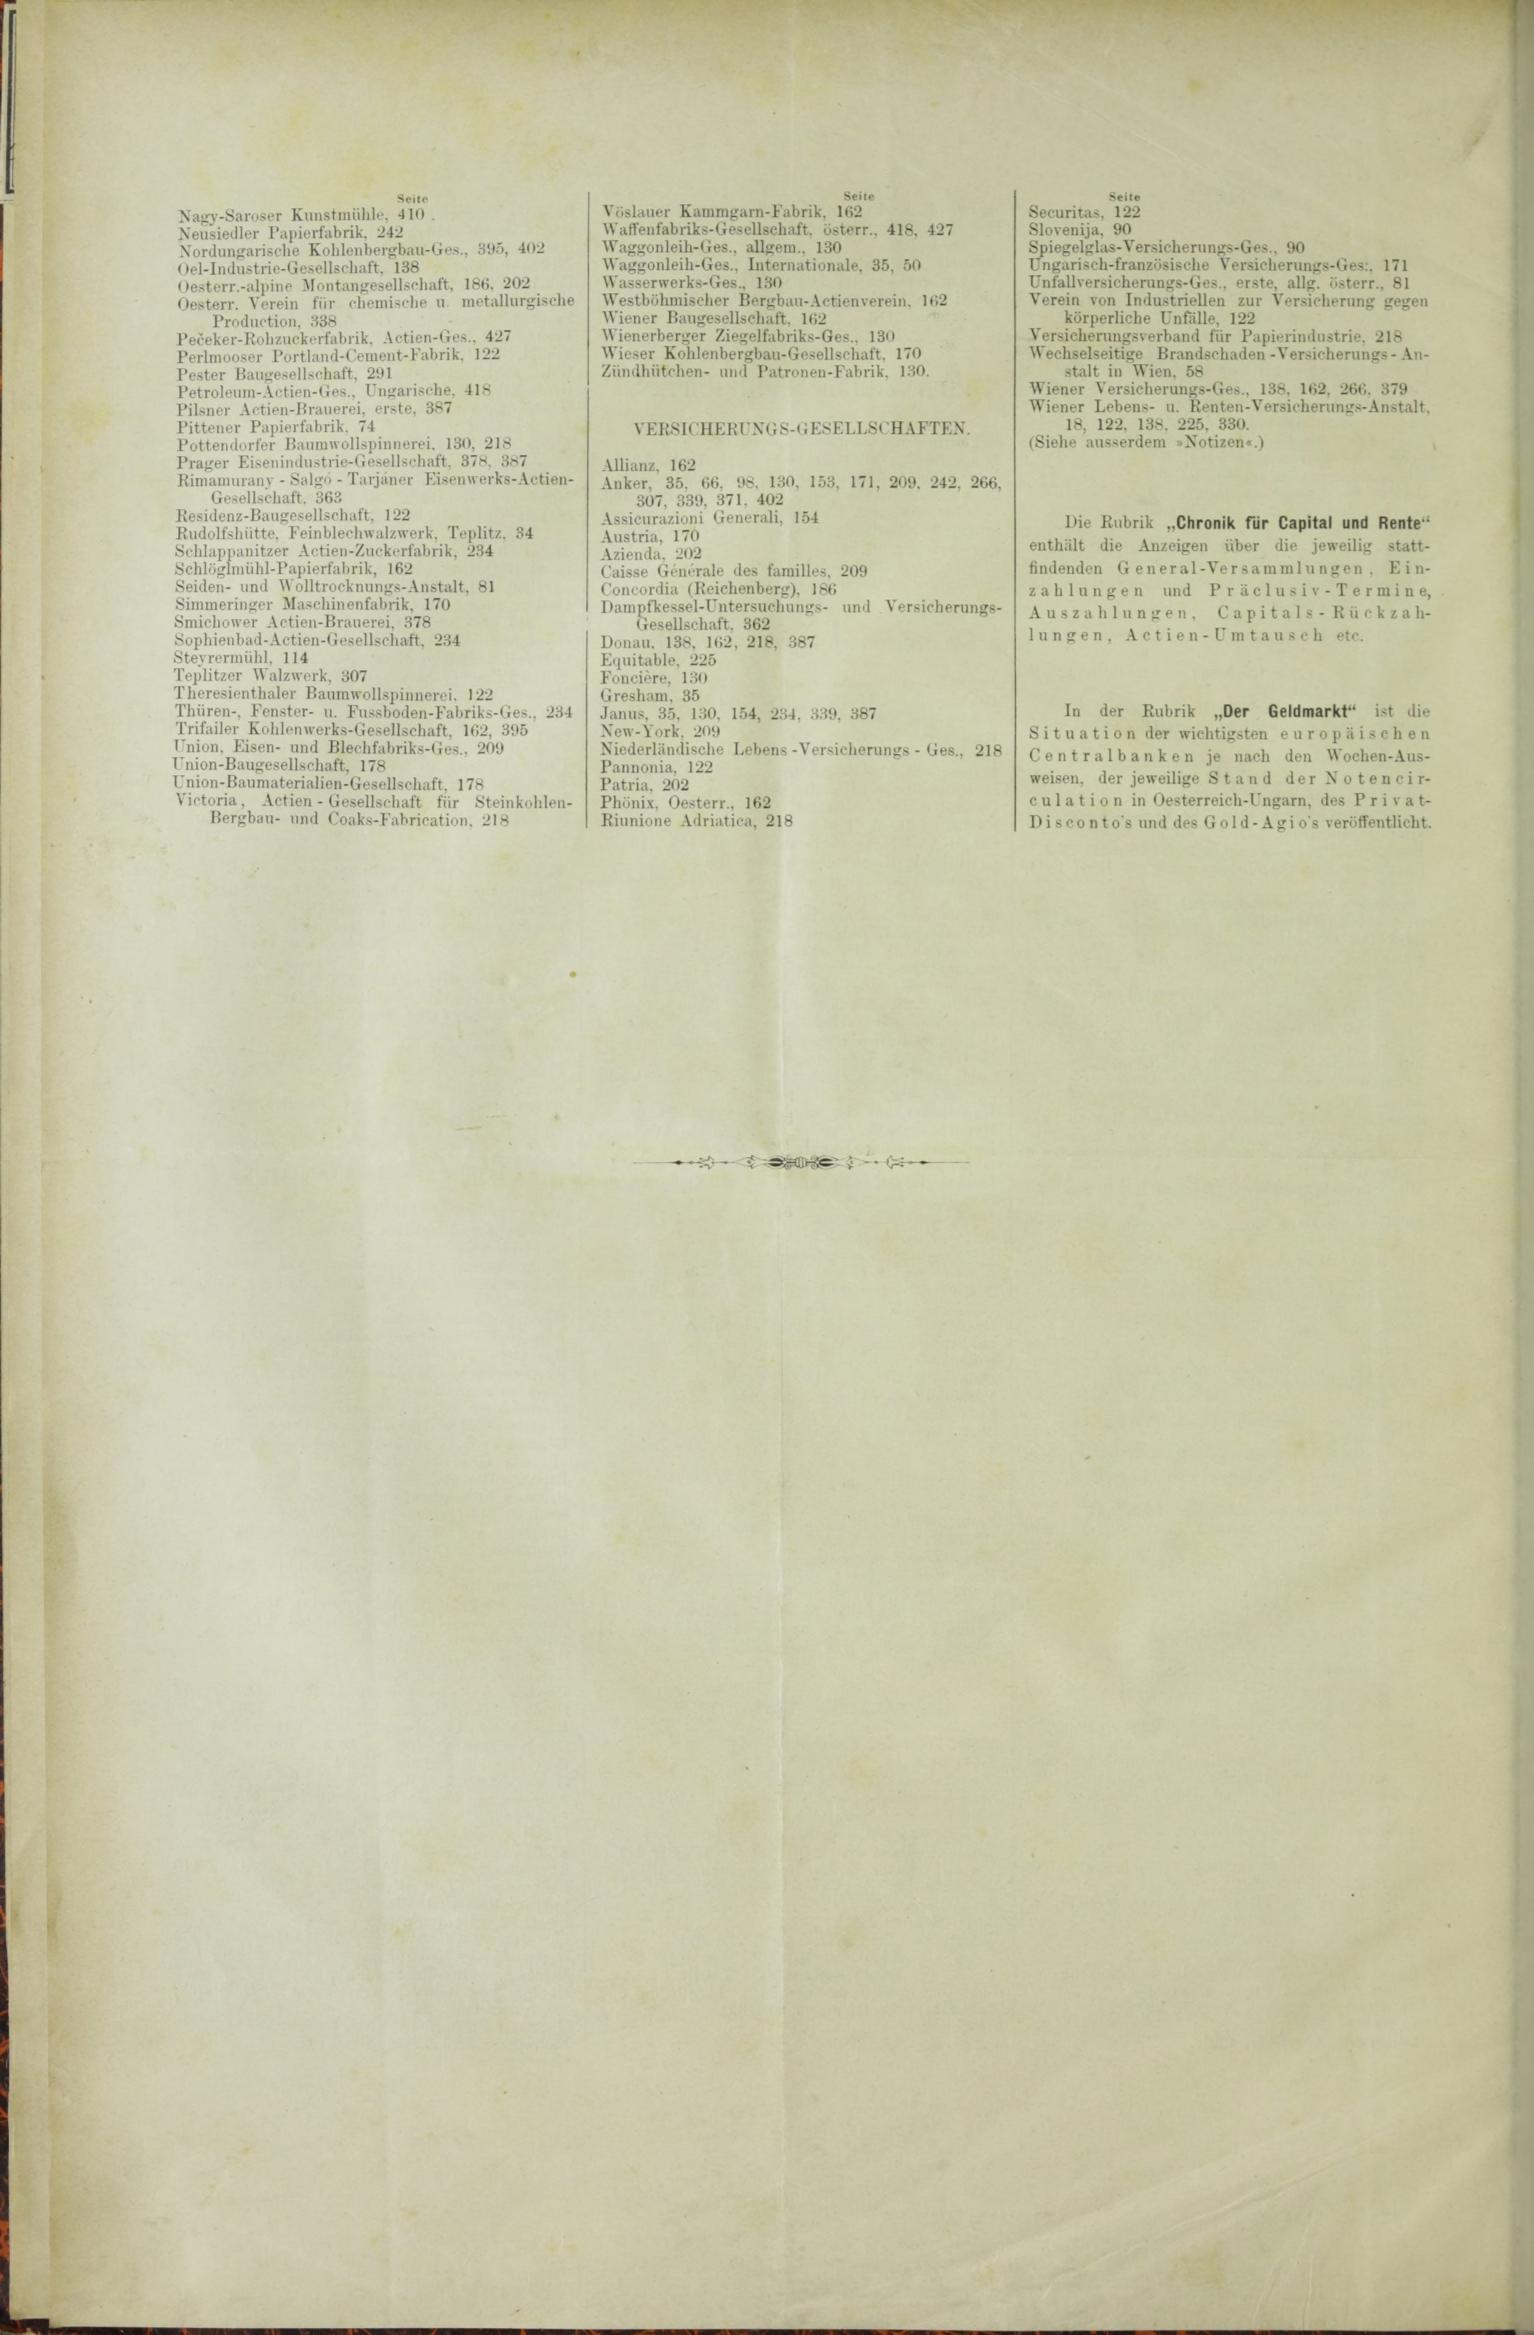 Der Tresor 29.01.1885 - Seite 12